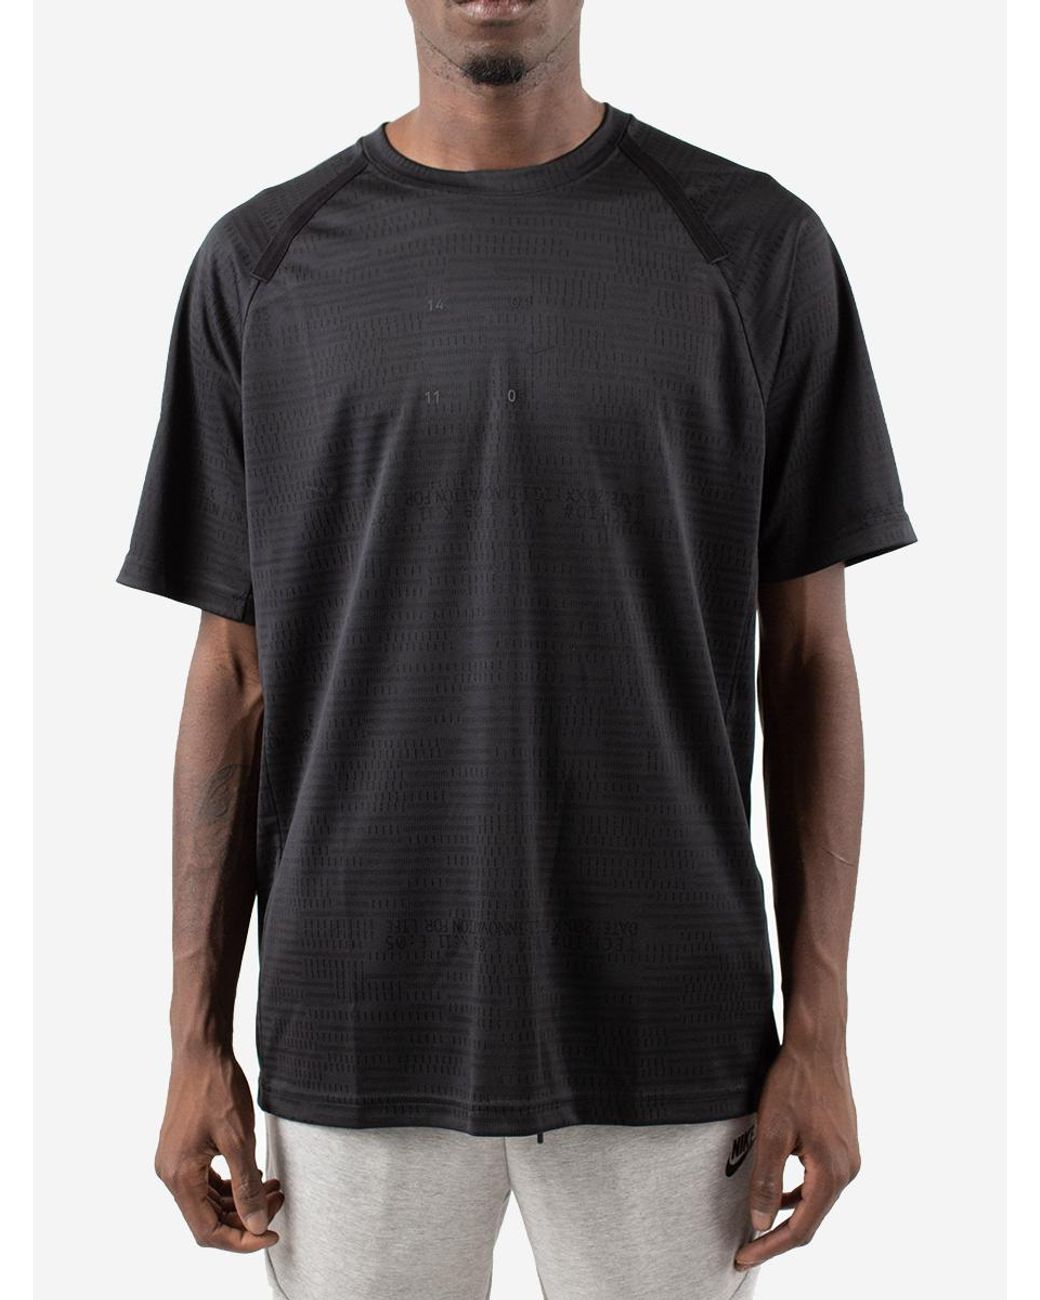 Nike Tech Pack T-shirt in Black for Men | Lyst UK